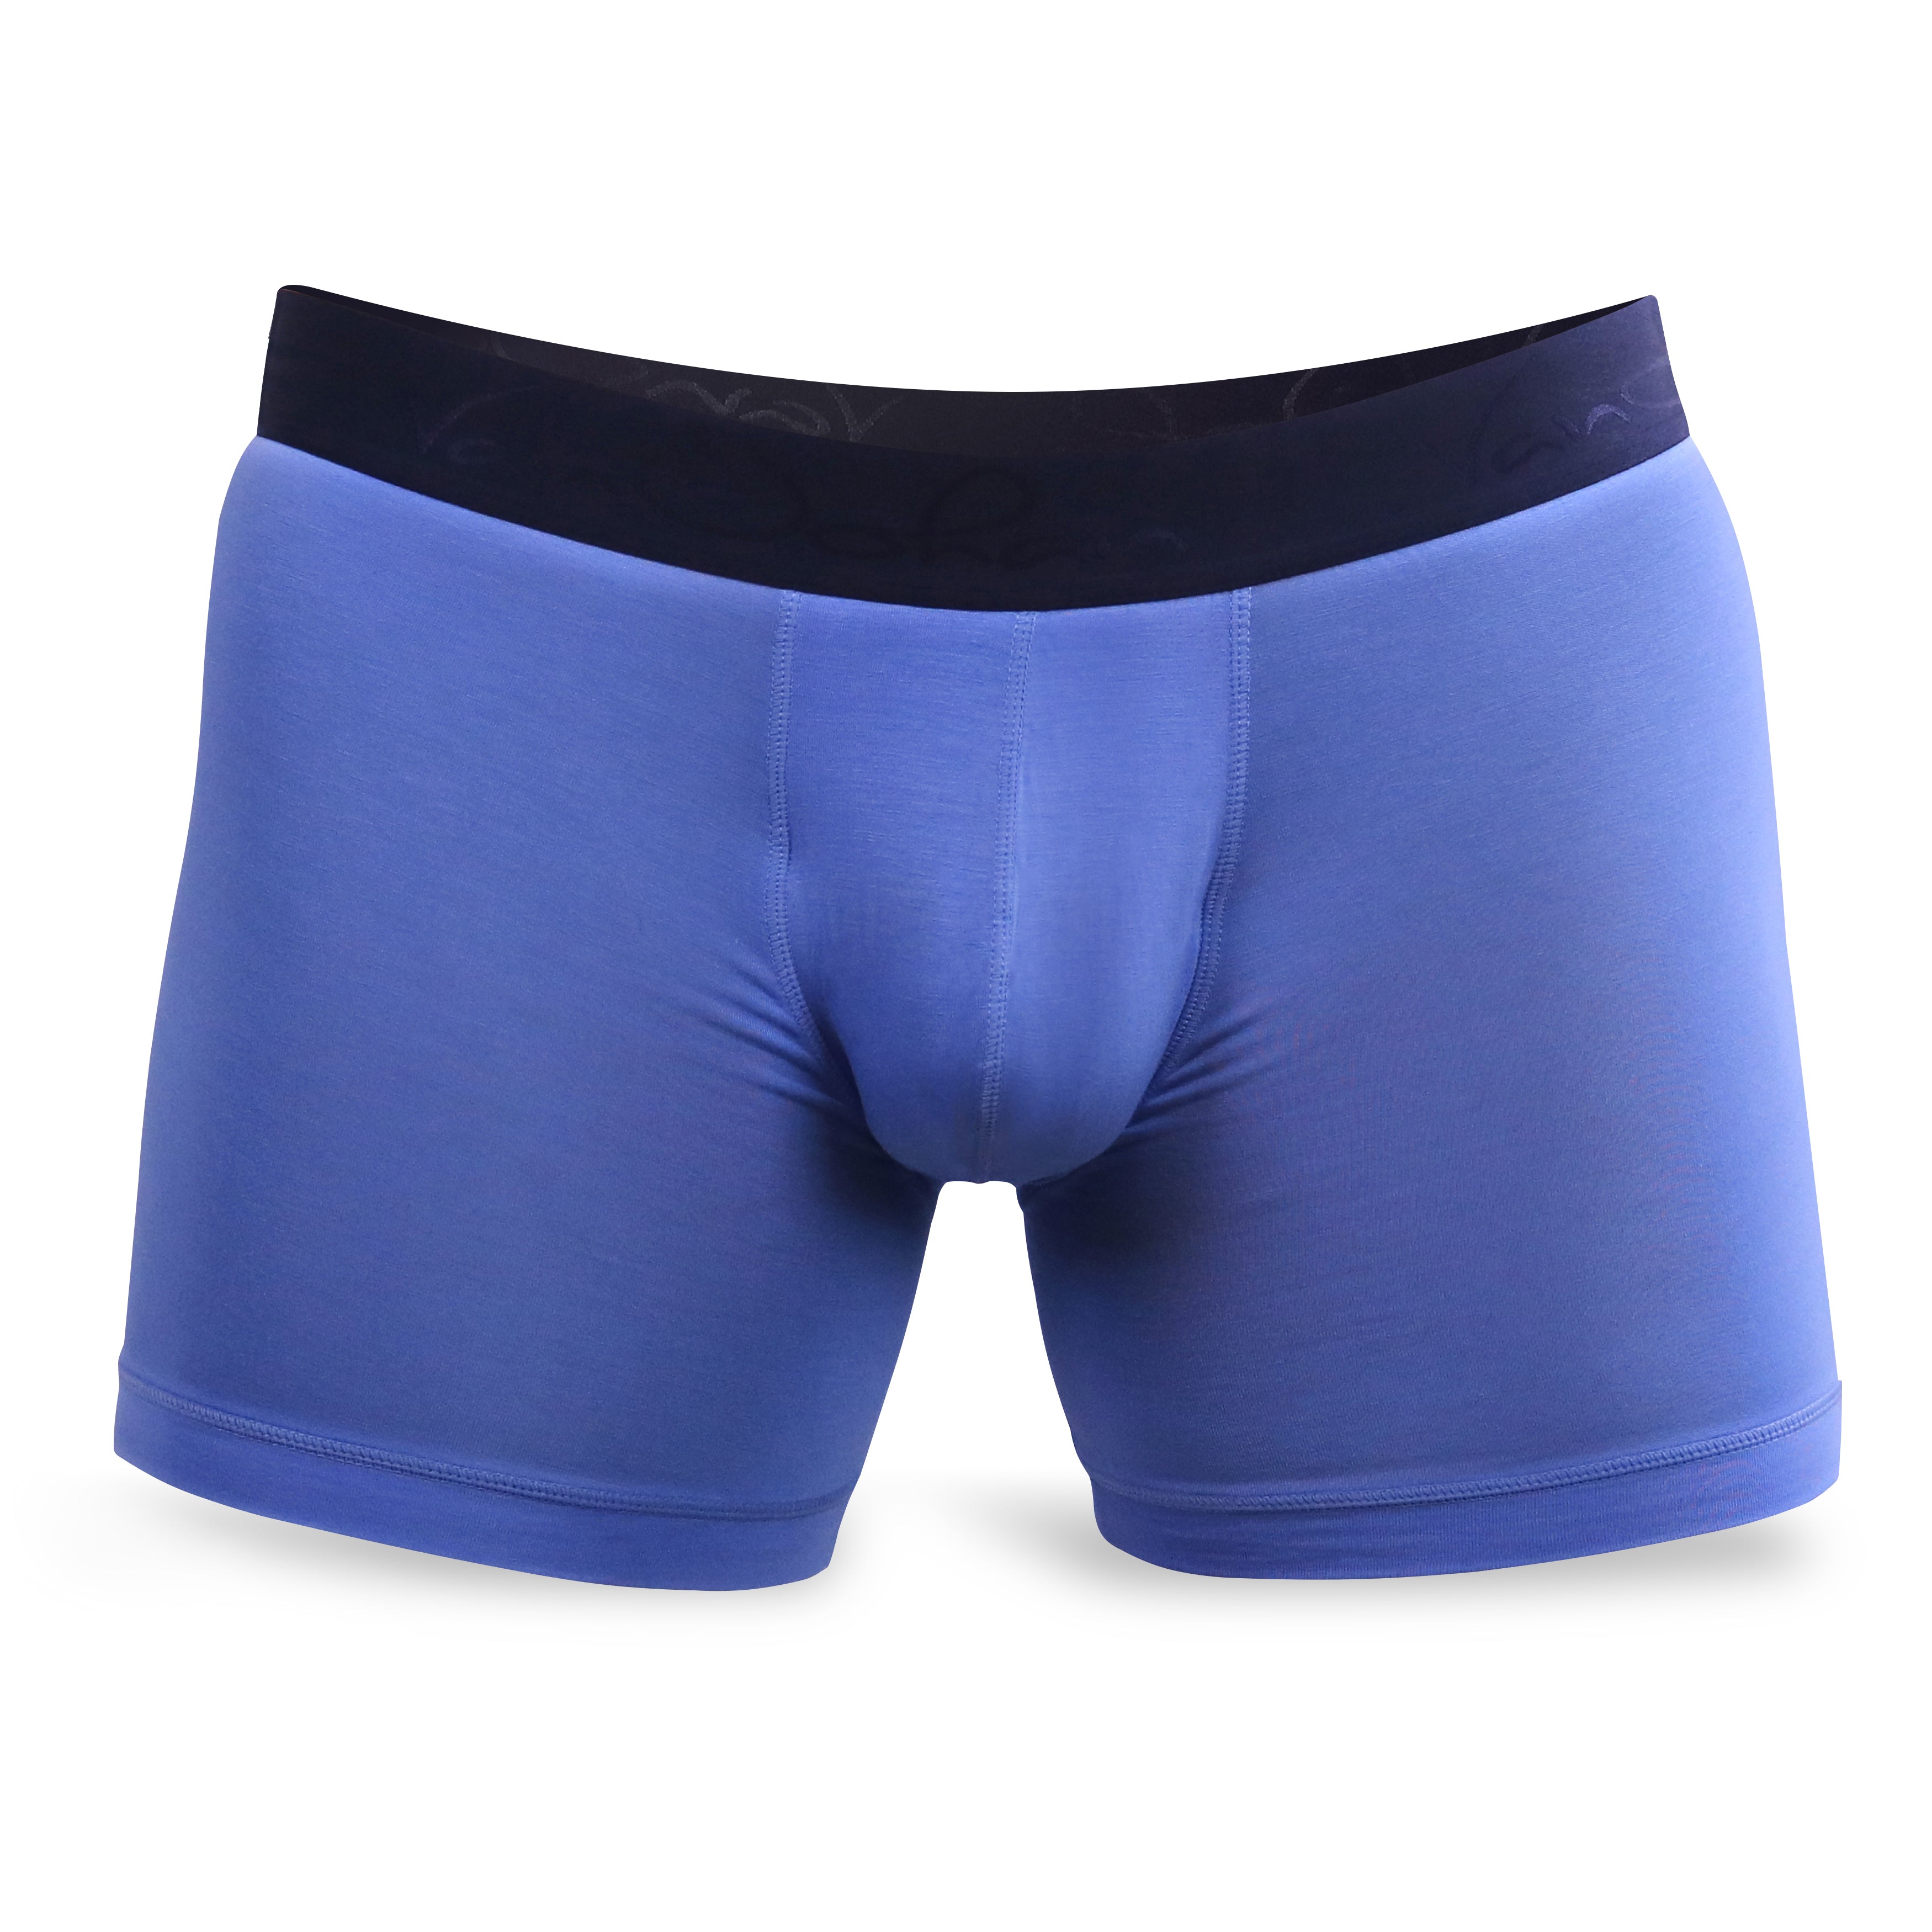 Buy 3 Get 1 Free Marina Blue  Best Mens Underwear for Ball Support –  VanJohan Underwear